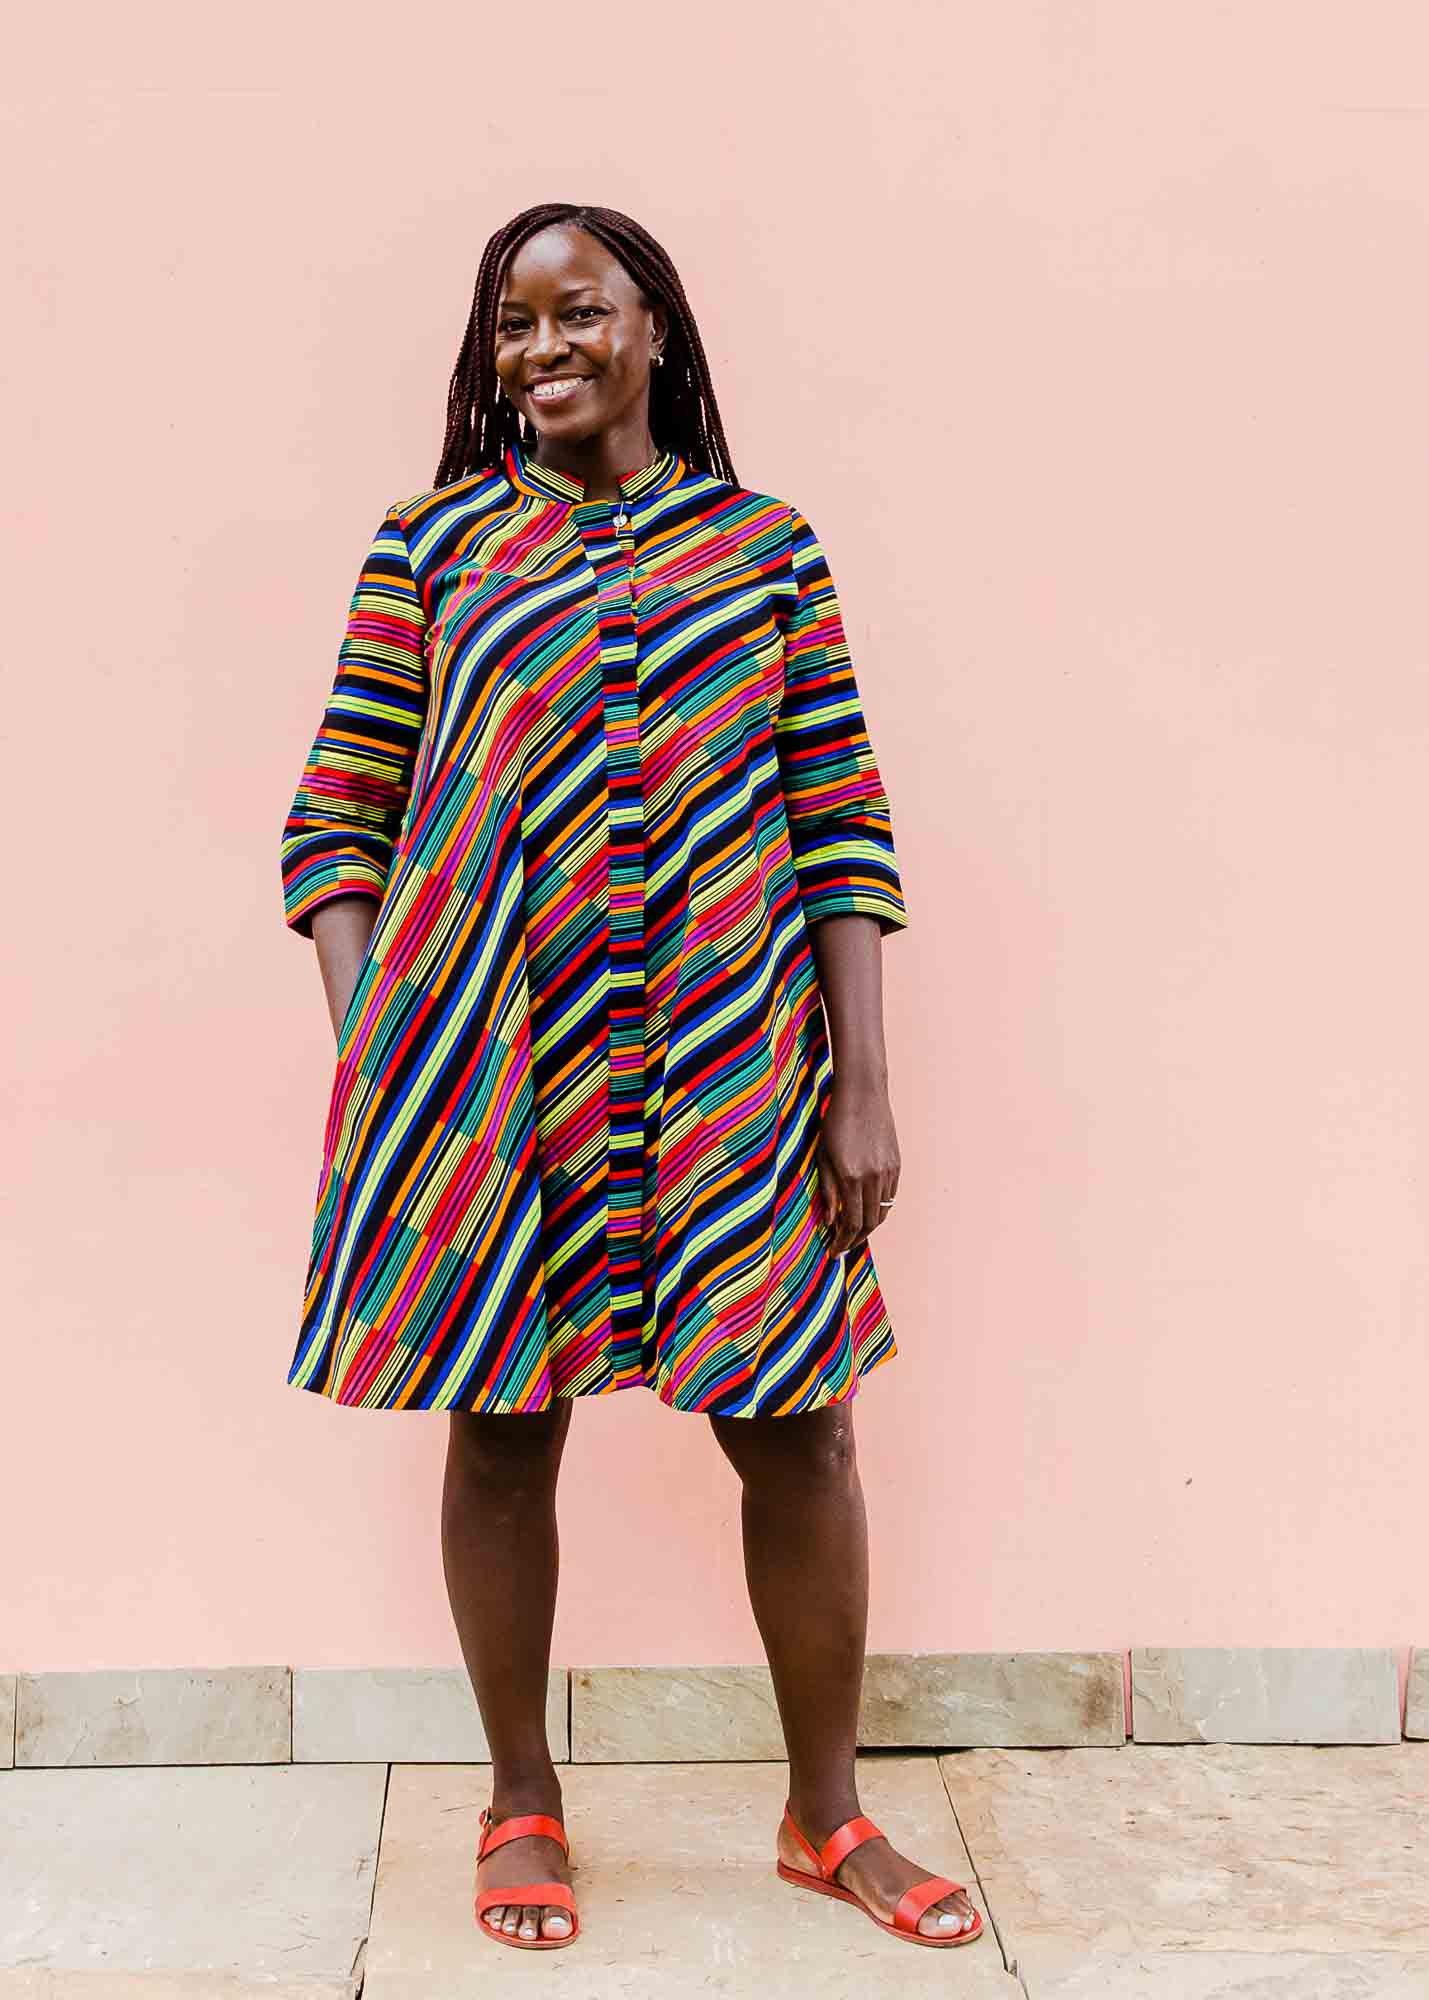 model wearing a rainbow striped dress